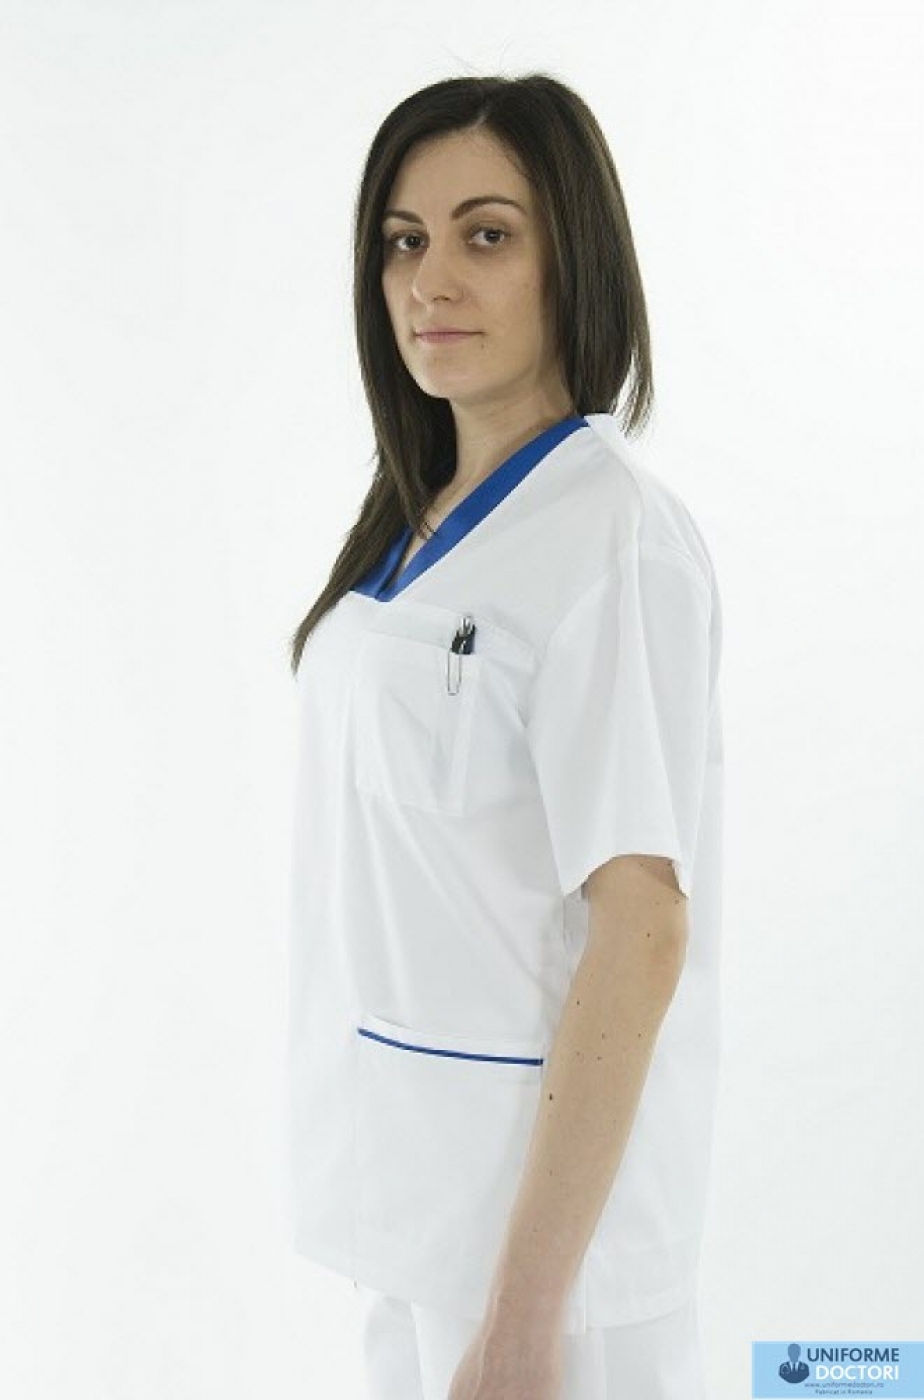 Uniforme medicale – Bluza medicala cu maneca scurta si guler in achior, model bicolor